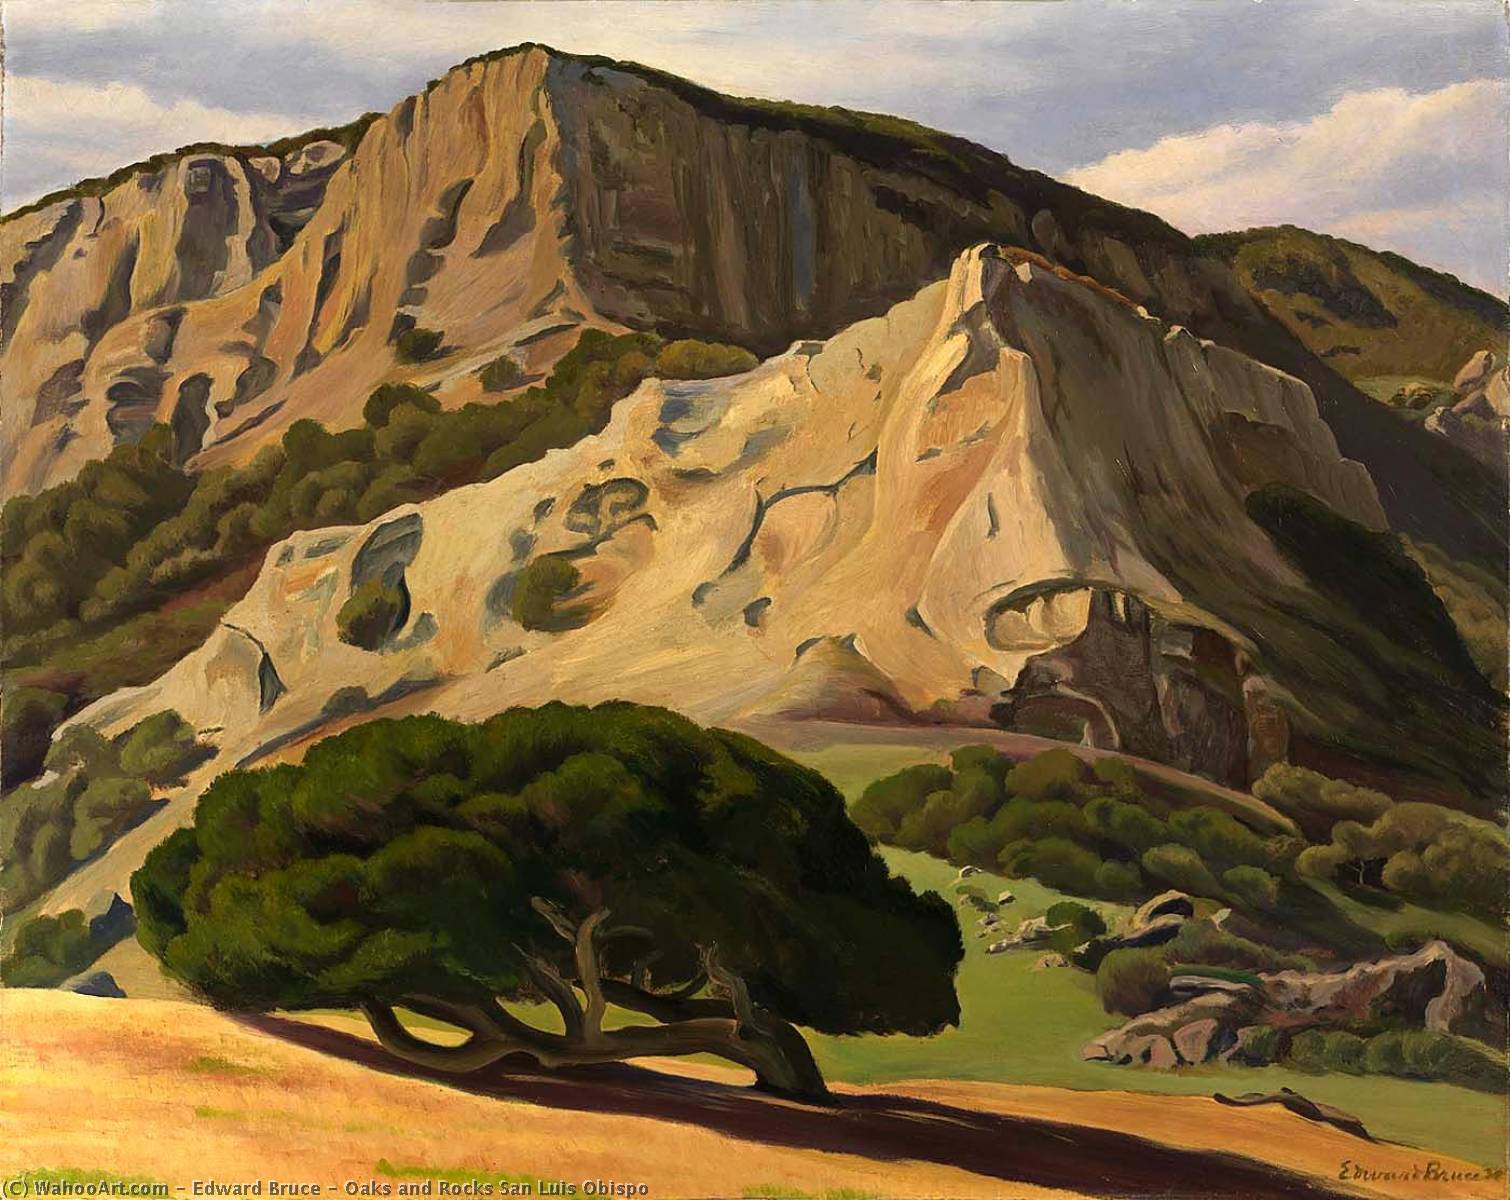 WikiOO.org - Encyclopedia of Fine Arts - Målning, konstverk Edward Bruce - Oaks and Rocks San Luis Obispo